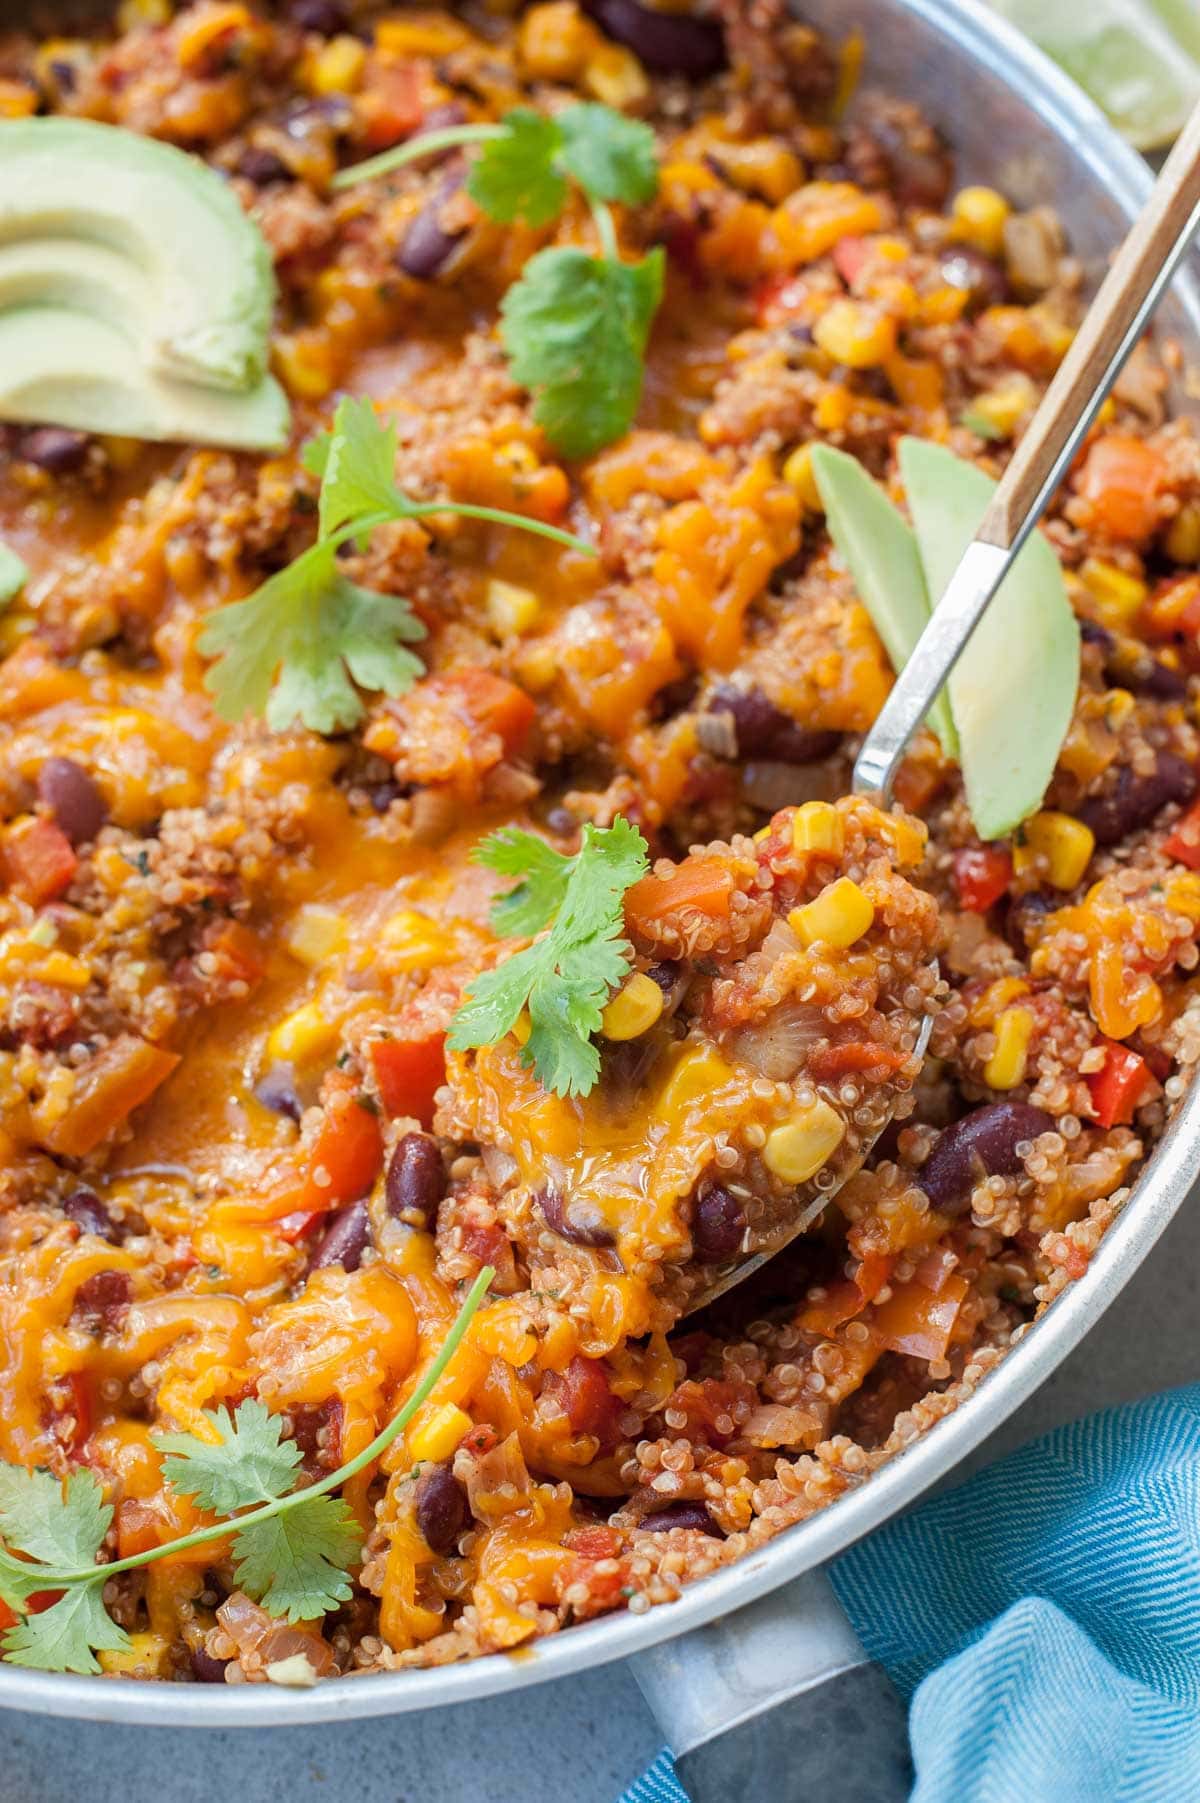 One Pot Mexican Quinoa - Everyday Delicious